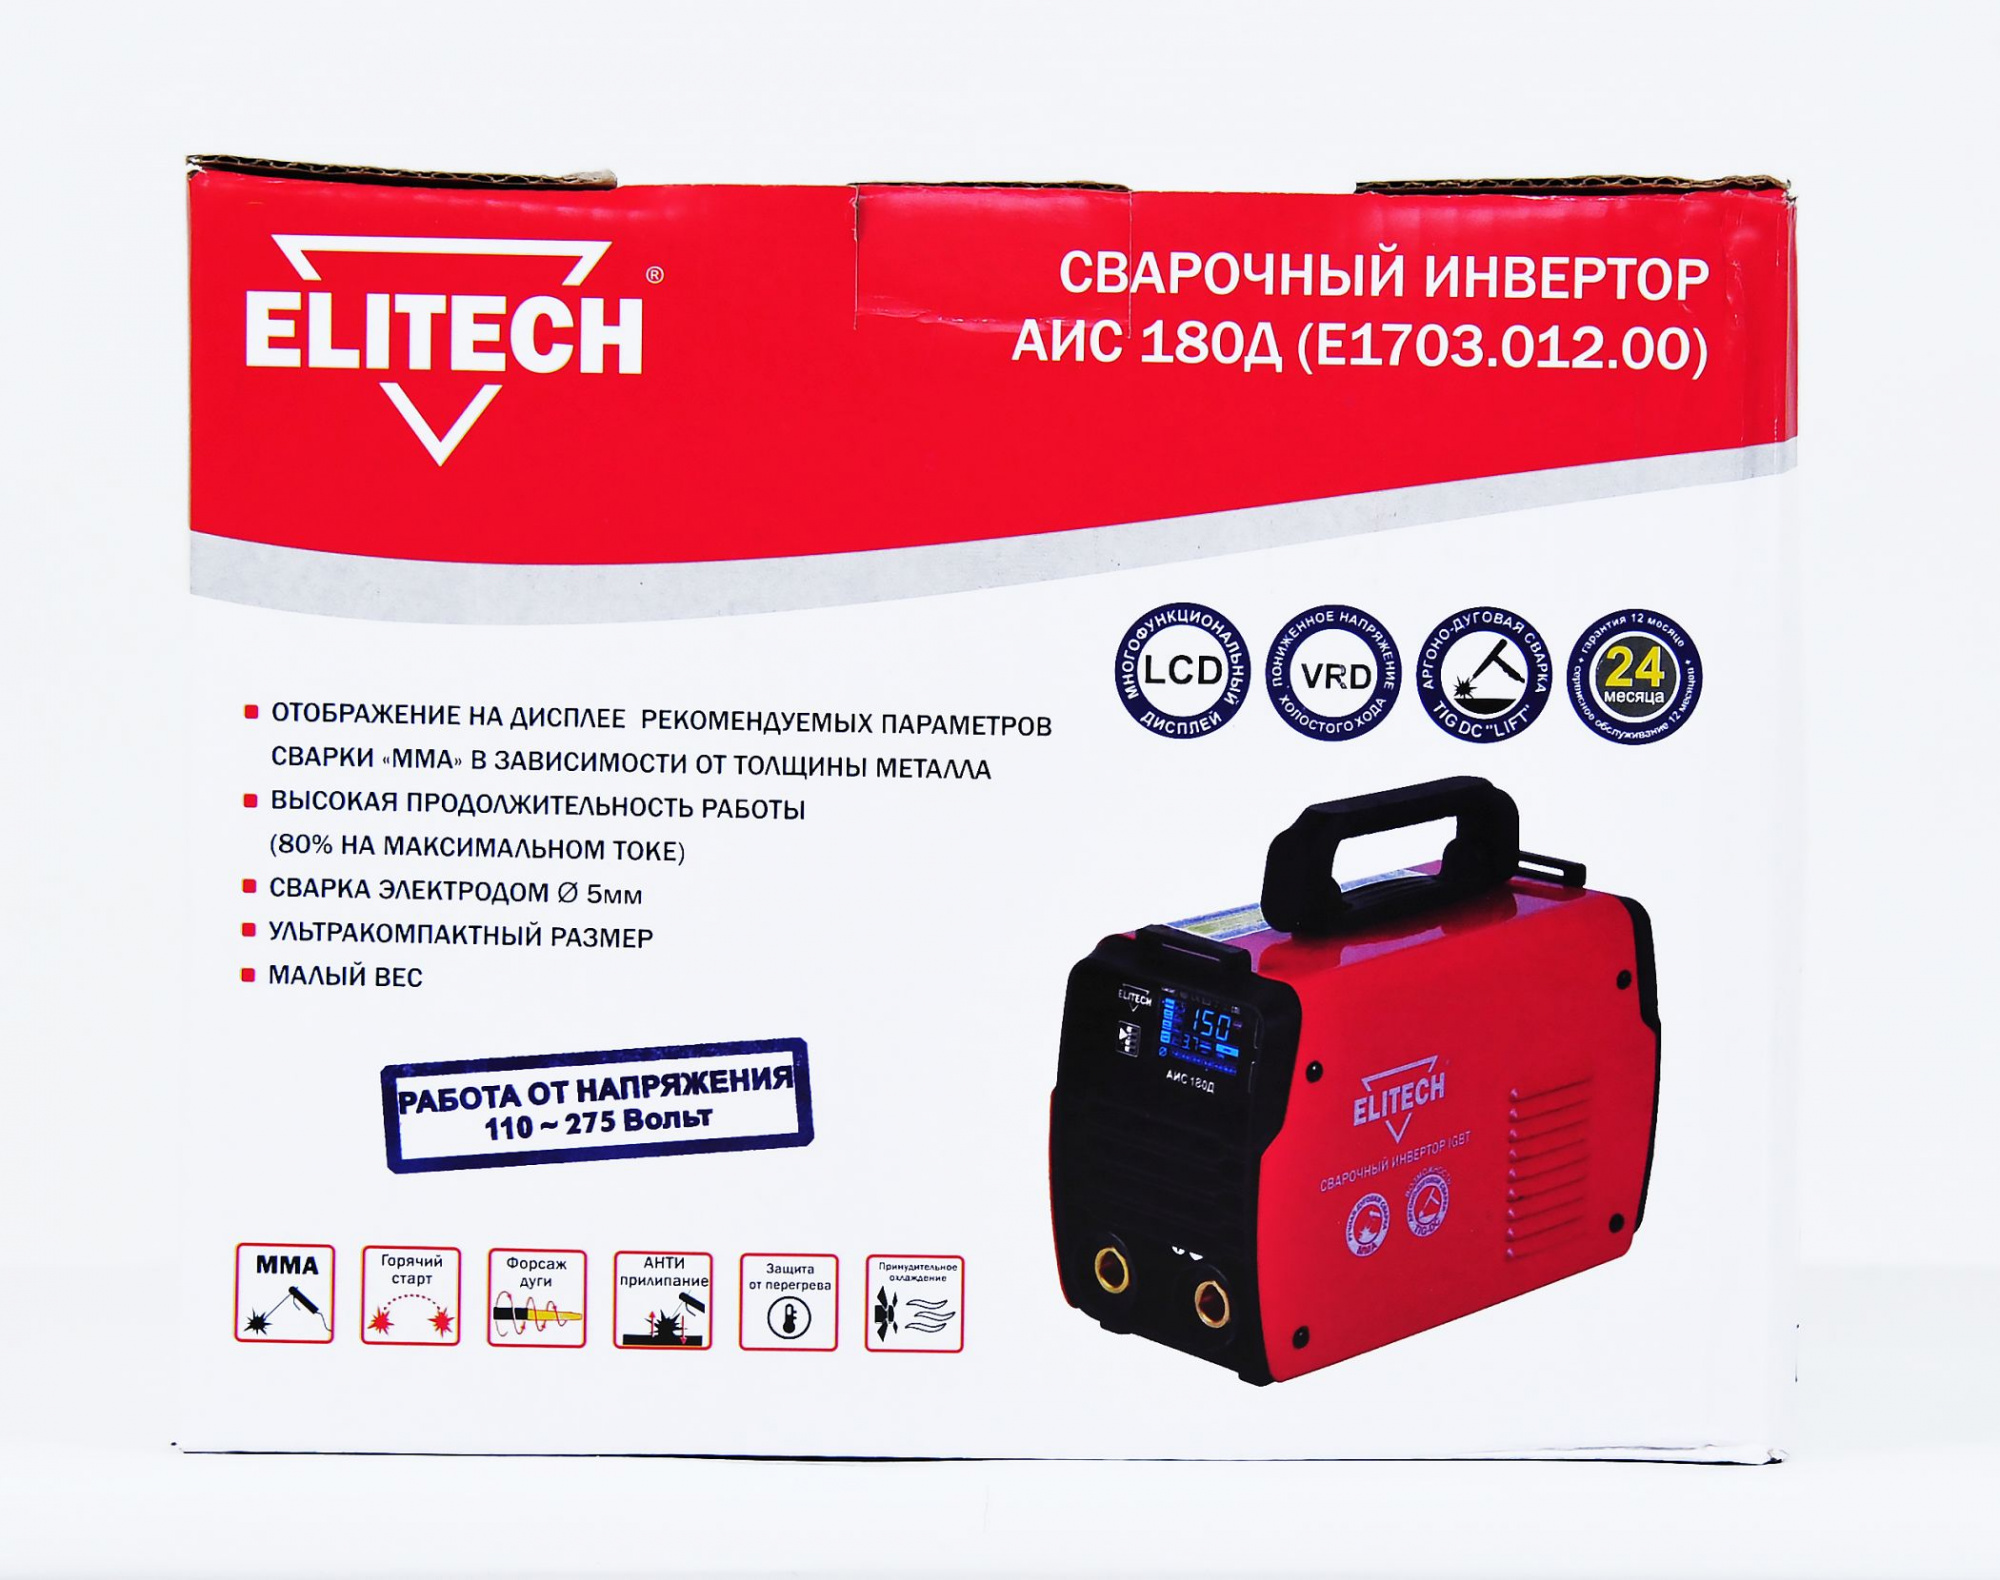 Сварочный аппарат Elitech АИС 180Д (E1703.012.00) инвертор 